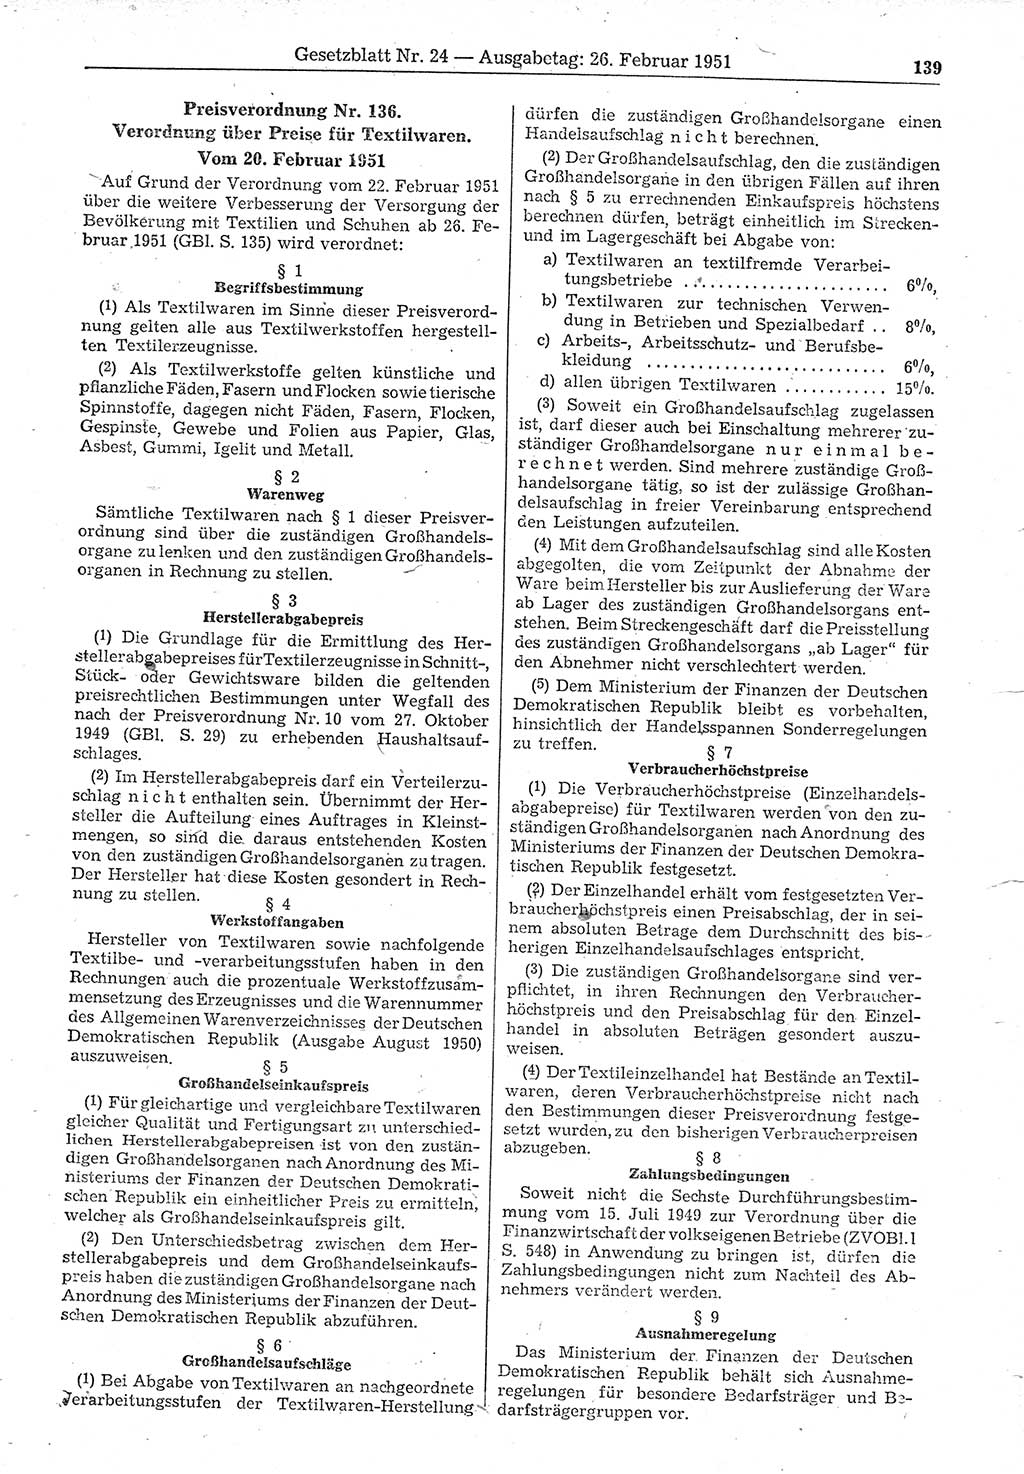 Gesetzblatt (GBl.) der Deutschen Demokratischen Republik (DDR) 1951, Seite 139 (GBl. DDR 1951, S. 139)